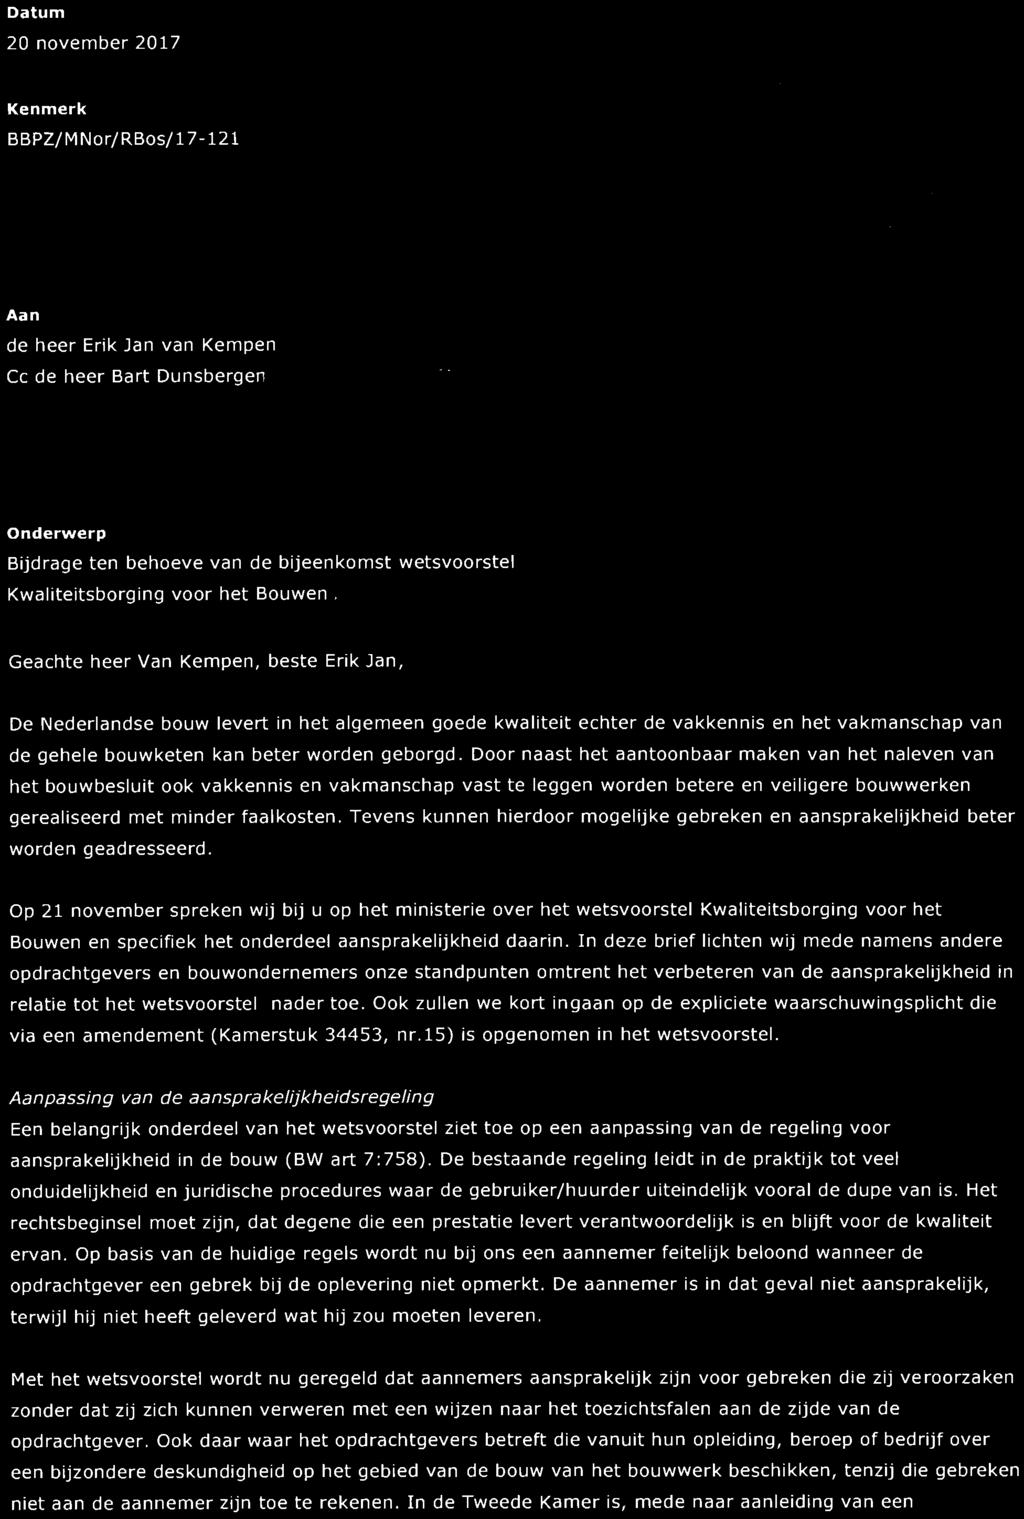 Datum vereniging van 20 november 2017 woningcorporaties Kenmerk BBPZ/MNor/RBos/17-121 Aan de heer Erik Jan van Kempen Cc de heer Bart Dunsbergen Onderwerp Bijdrage ten behoeve van de bijeenkomst